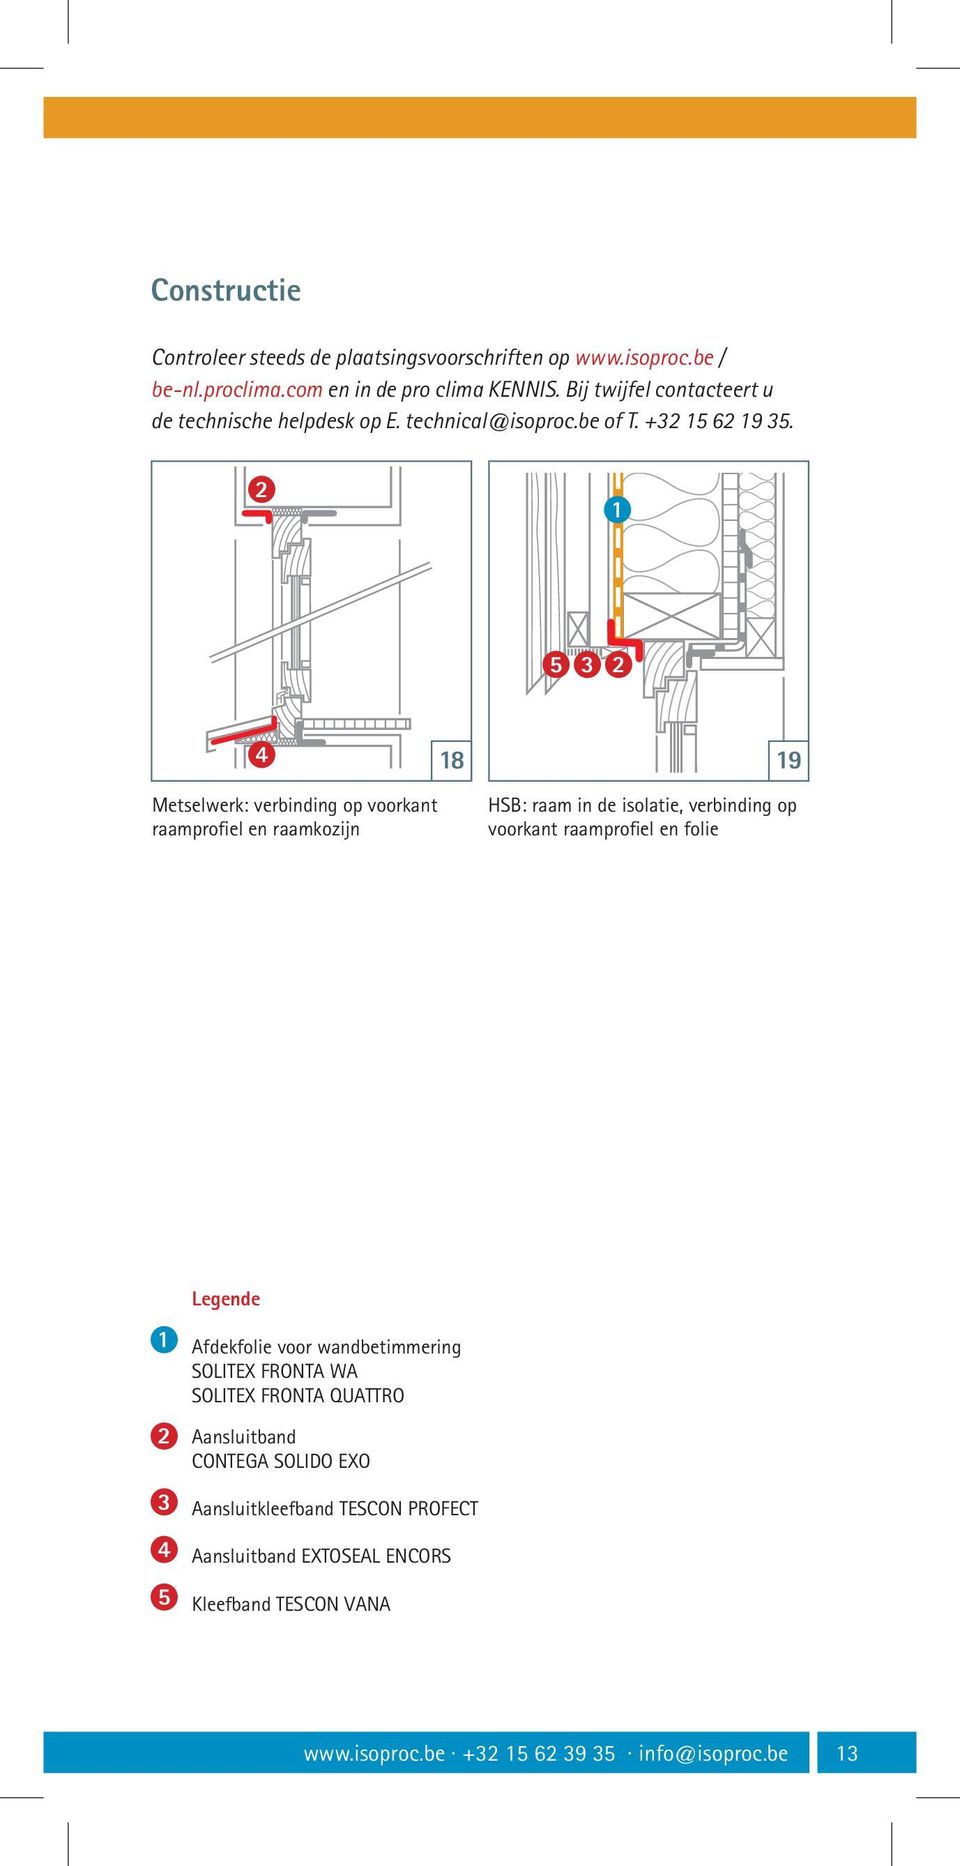 5 Metselwerk: verbinding op voorkant raamprofiel en raamkozijn 8 9 HSB: raam in de isolatie, verbinding op voorkant raamprofiel en folie Legende